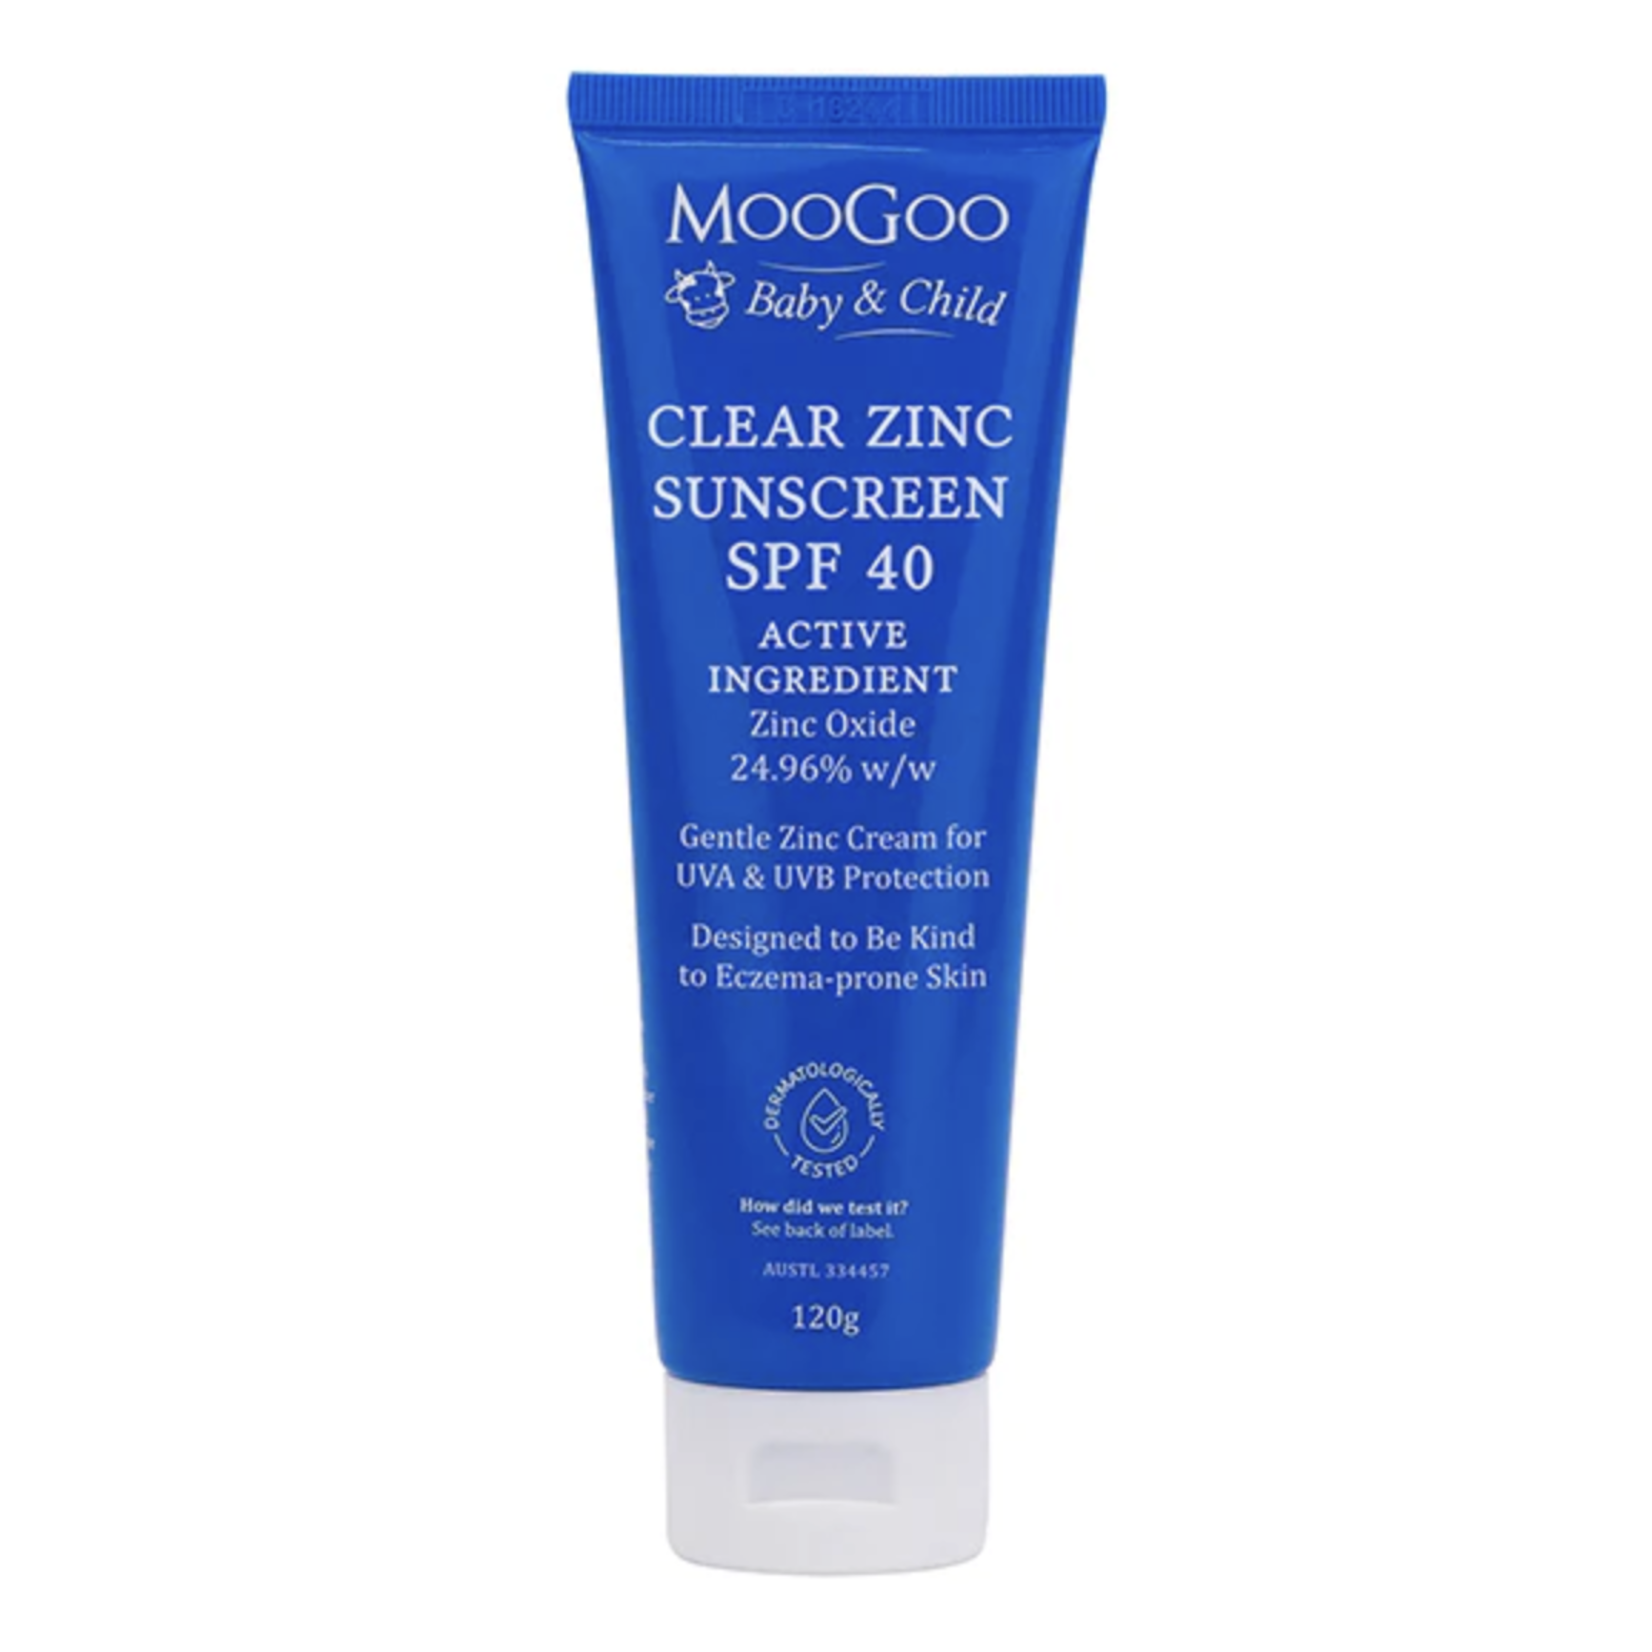 MooGoo Clear Zinc Sunscreen SPF 40 120g (AUSTL 334457)